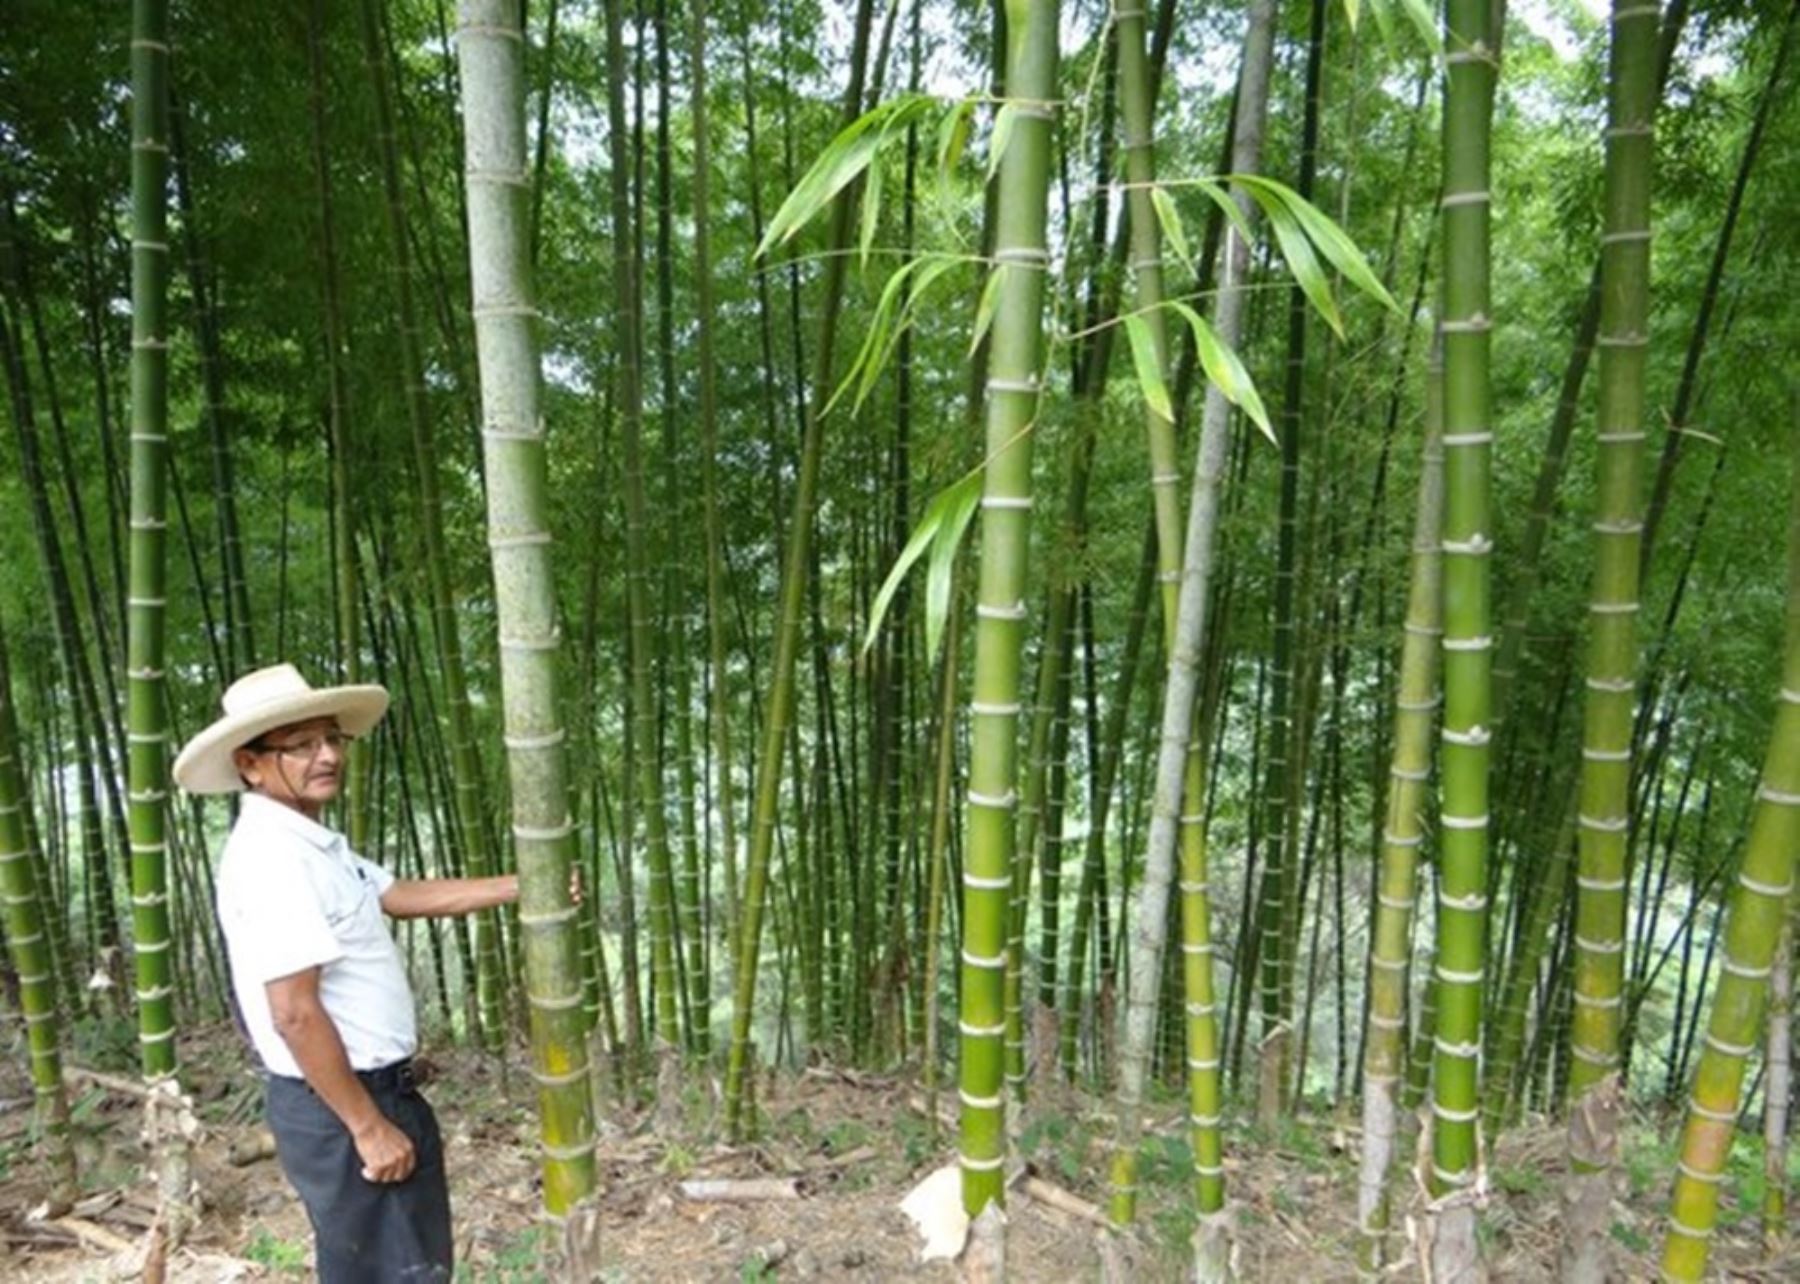 El bambú abunda en nuestra frontera norte y es un insumo de inmenso potencial para la construcción y otras ramas industriales. Su uso sostenible permitirá mejorar la calidad de vida de pequeños agricultores, mientras se preserva la calidad del medio ambiente.ANDINA/DifusiónANDINA